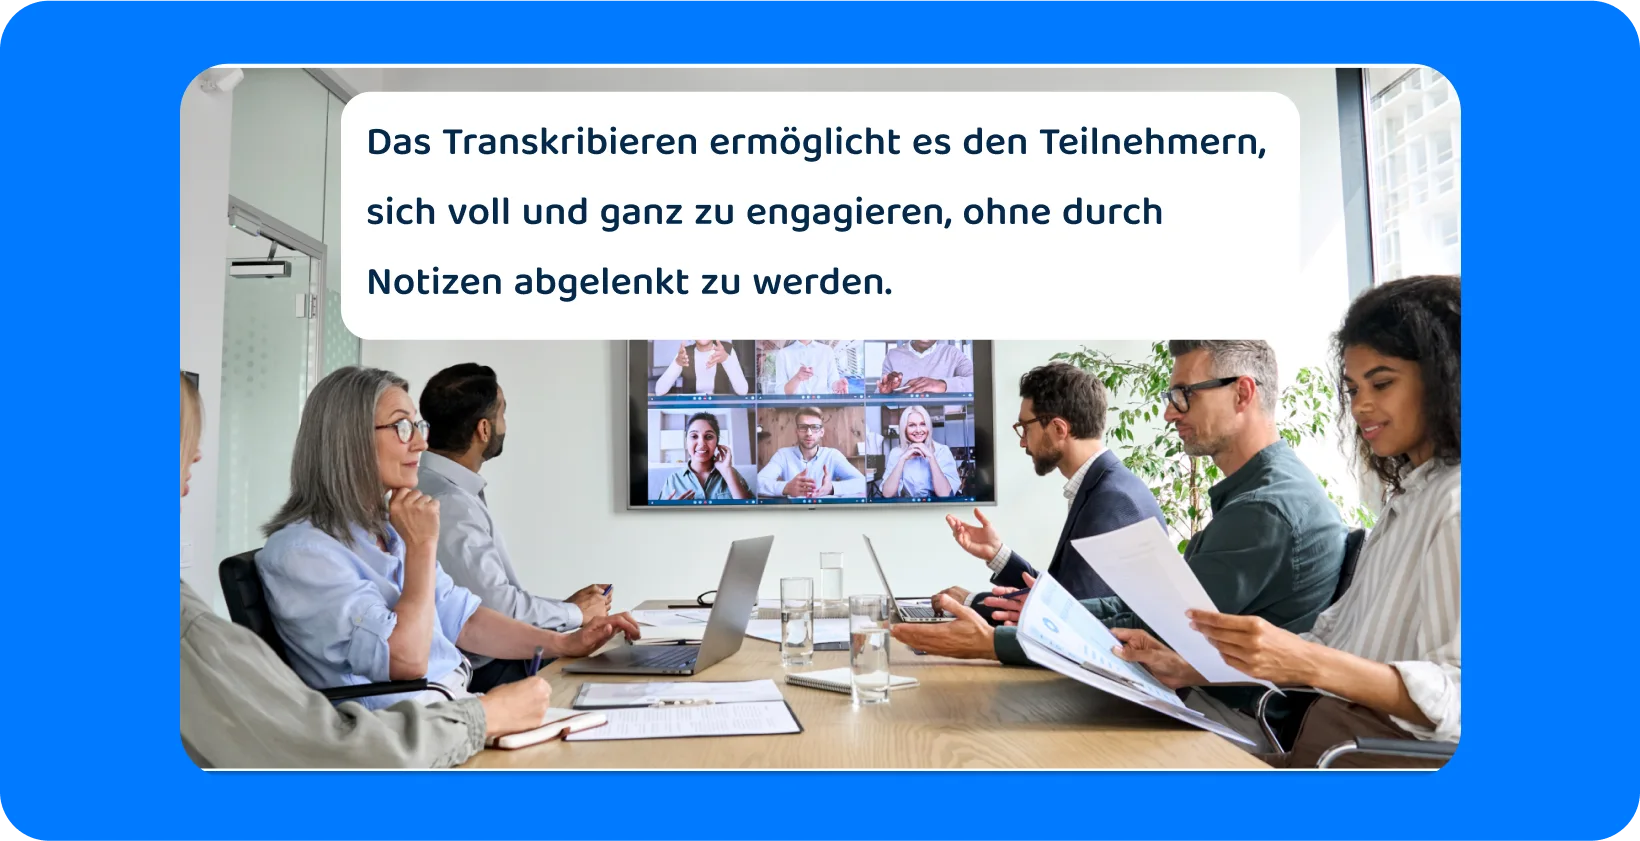 Teambesprechung mit persönlichen und virtuellen Teilnehmern, die die Notwendigkeit einer umfassenden Transkription unterstreicht.